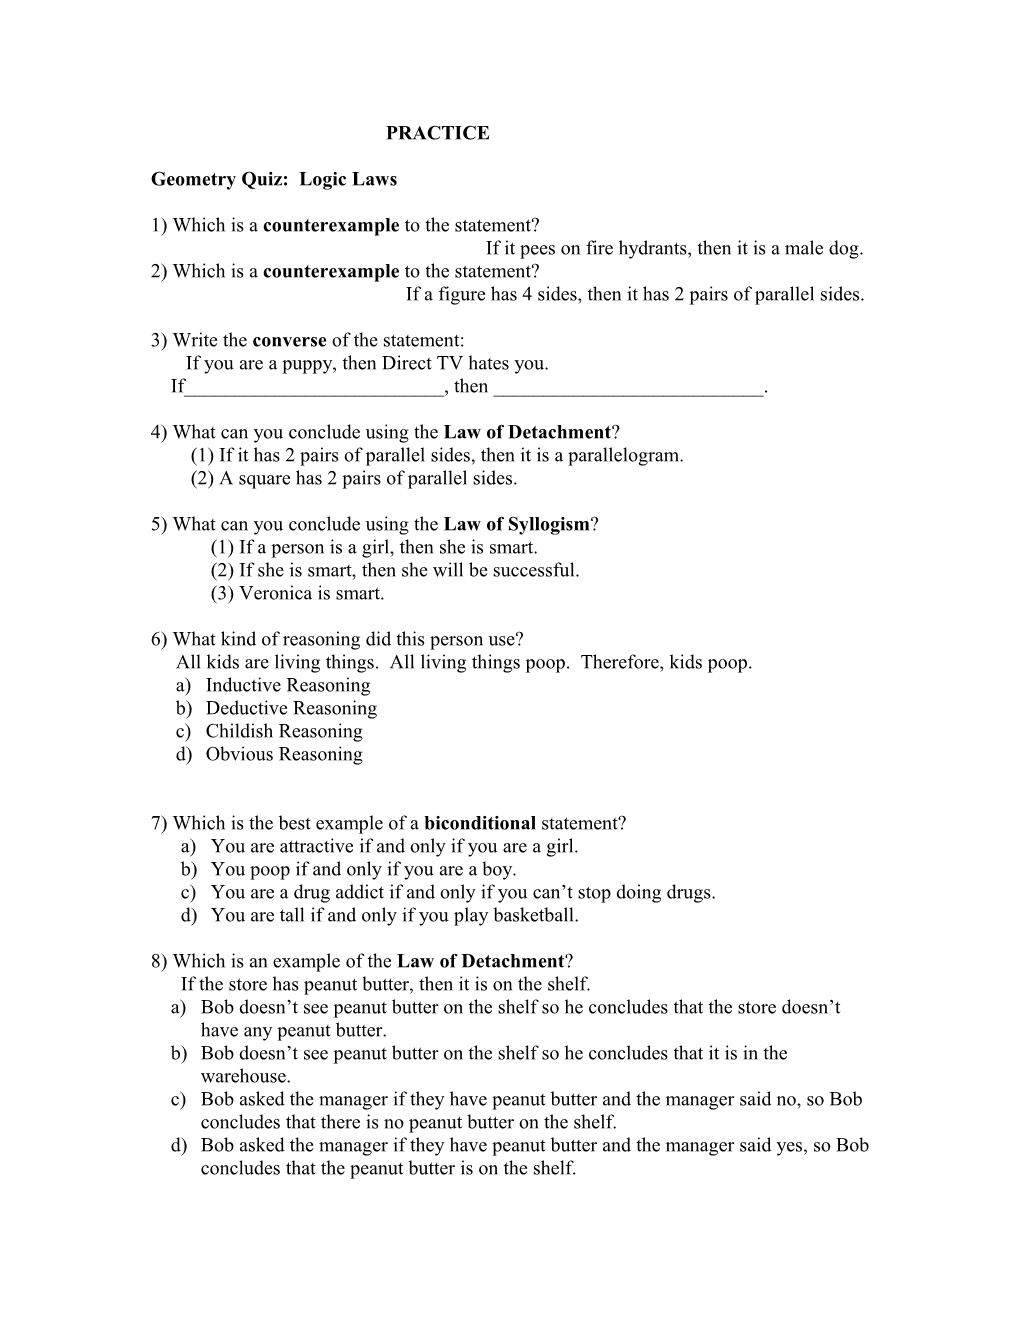 Geometry Test 7: Logic Laws